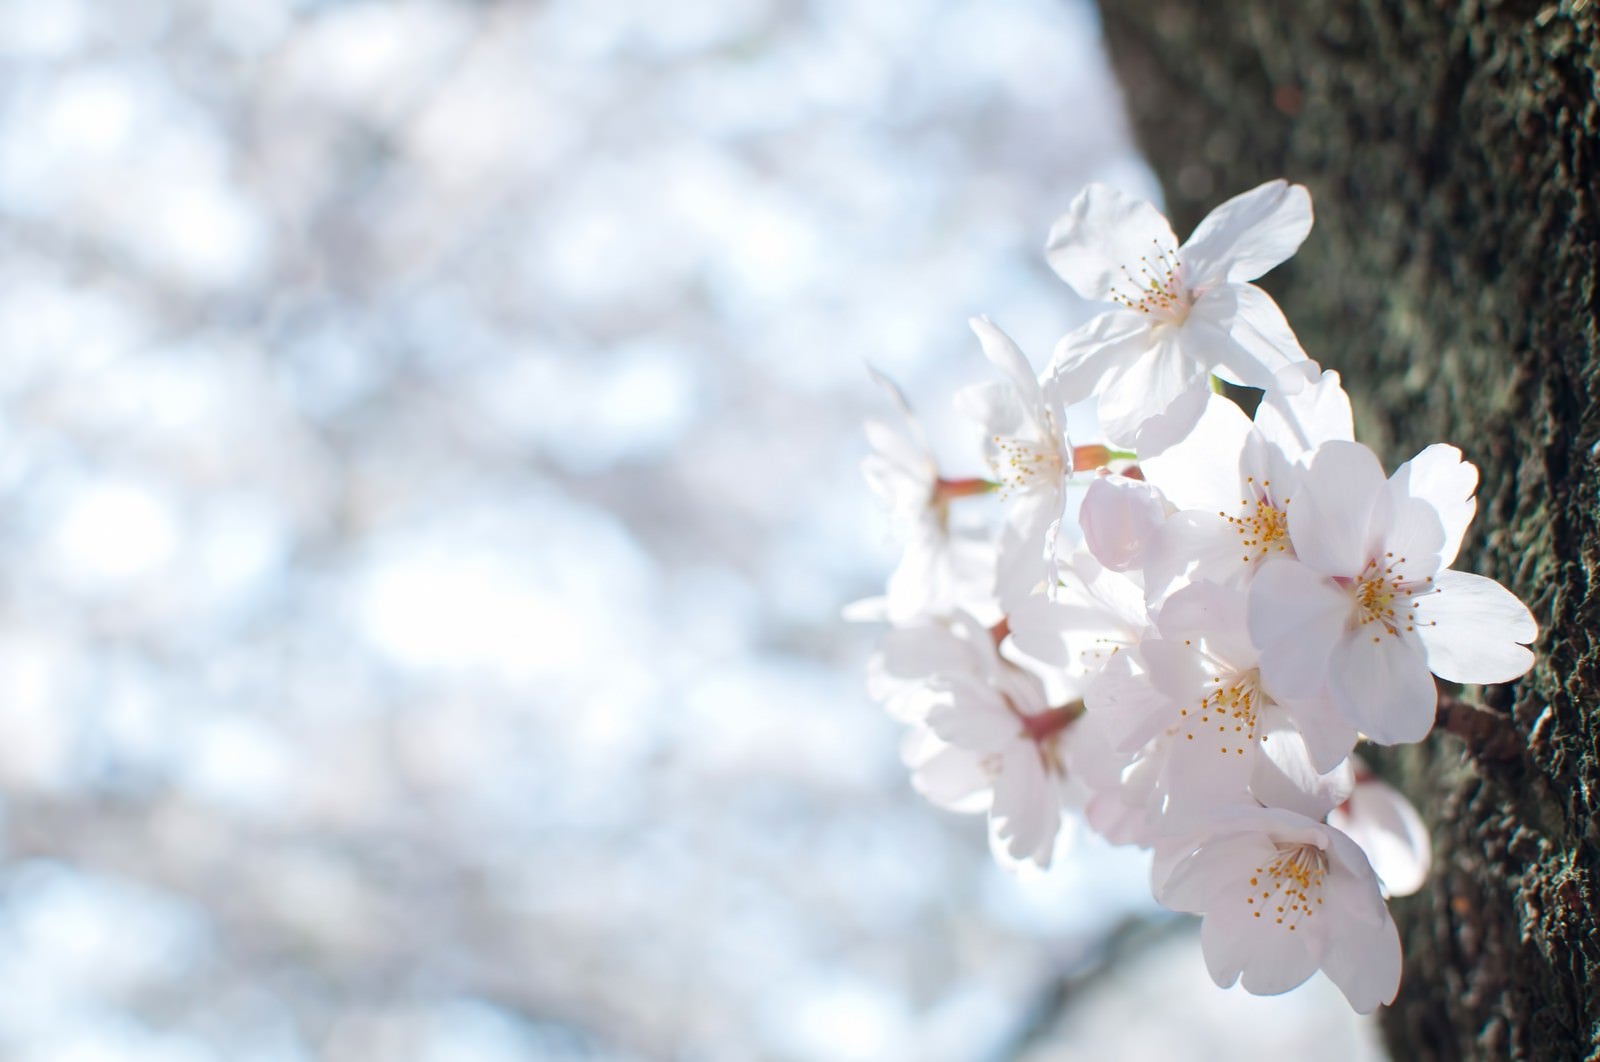 「冷たい空と桜の花」の写真